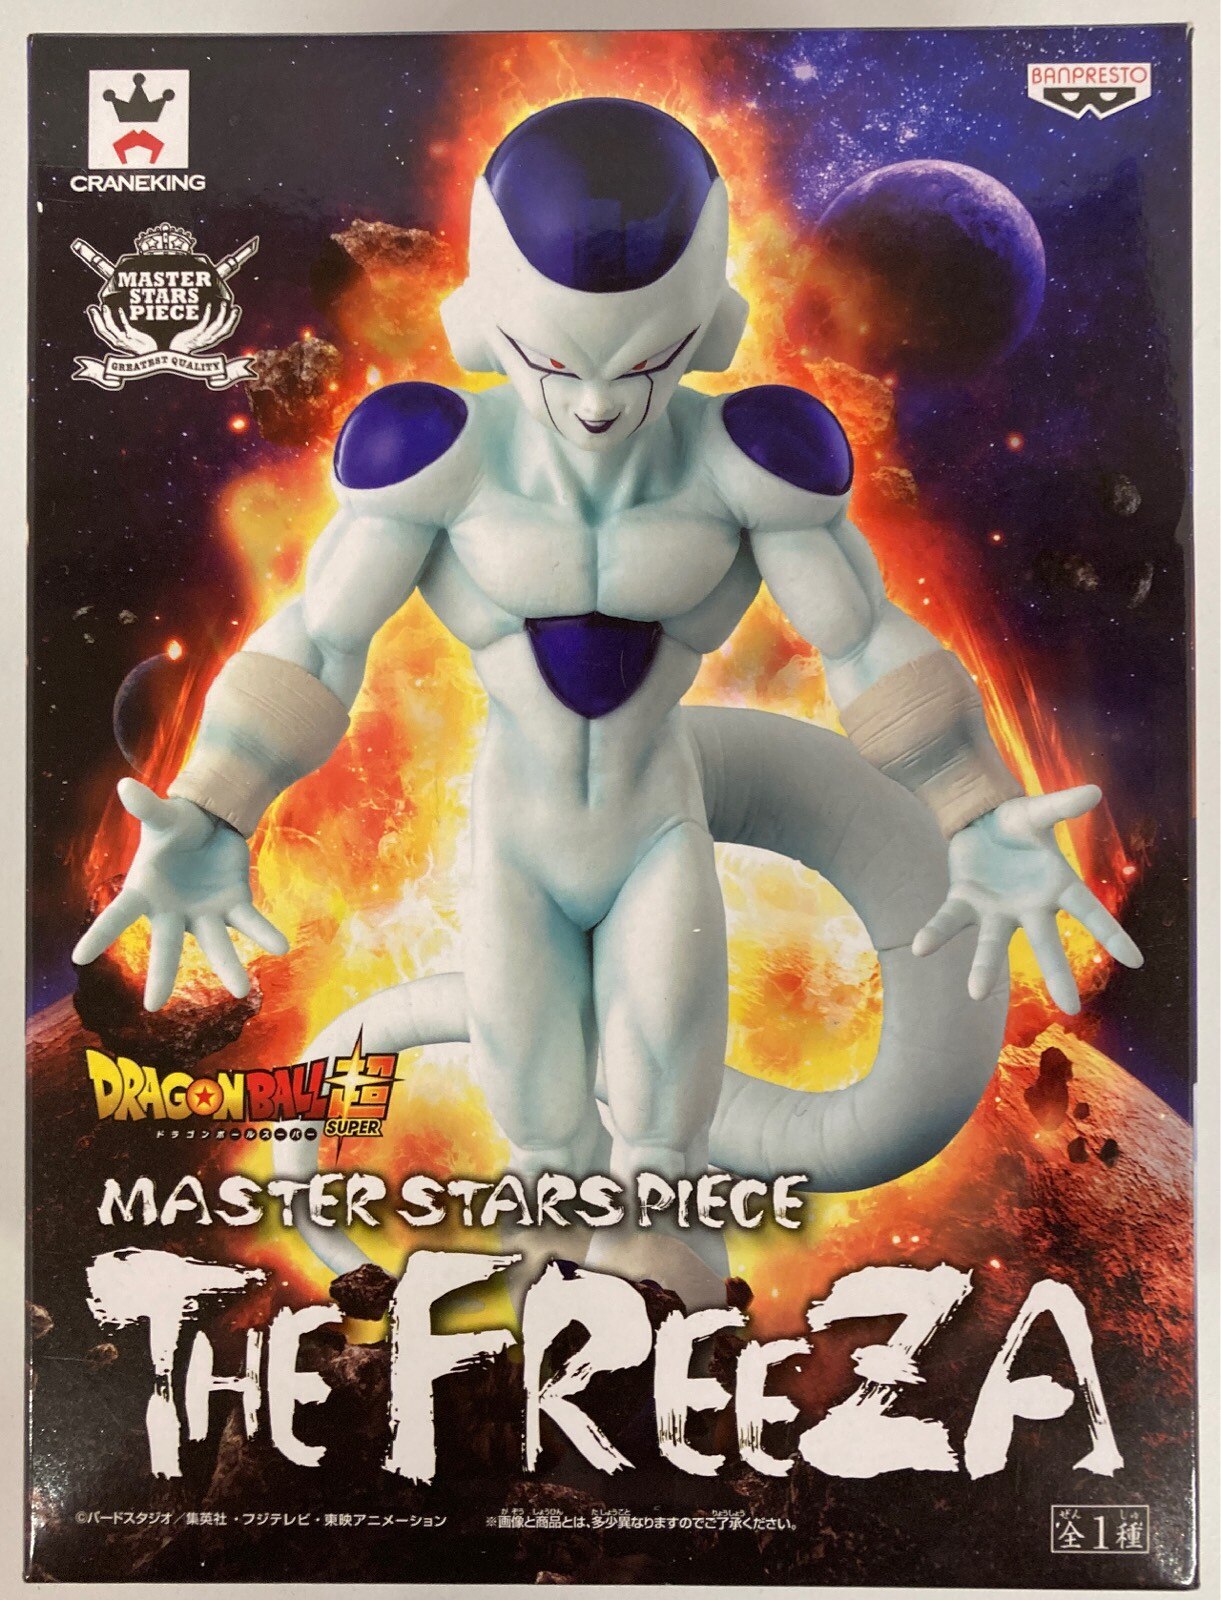 フリーザ(最終形態) ドラゴンボール超(スーパー) MASTERSTARS PIECE THE FREEZA フィギュア プライズ(36013) バンプレスト